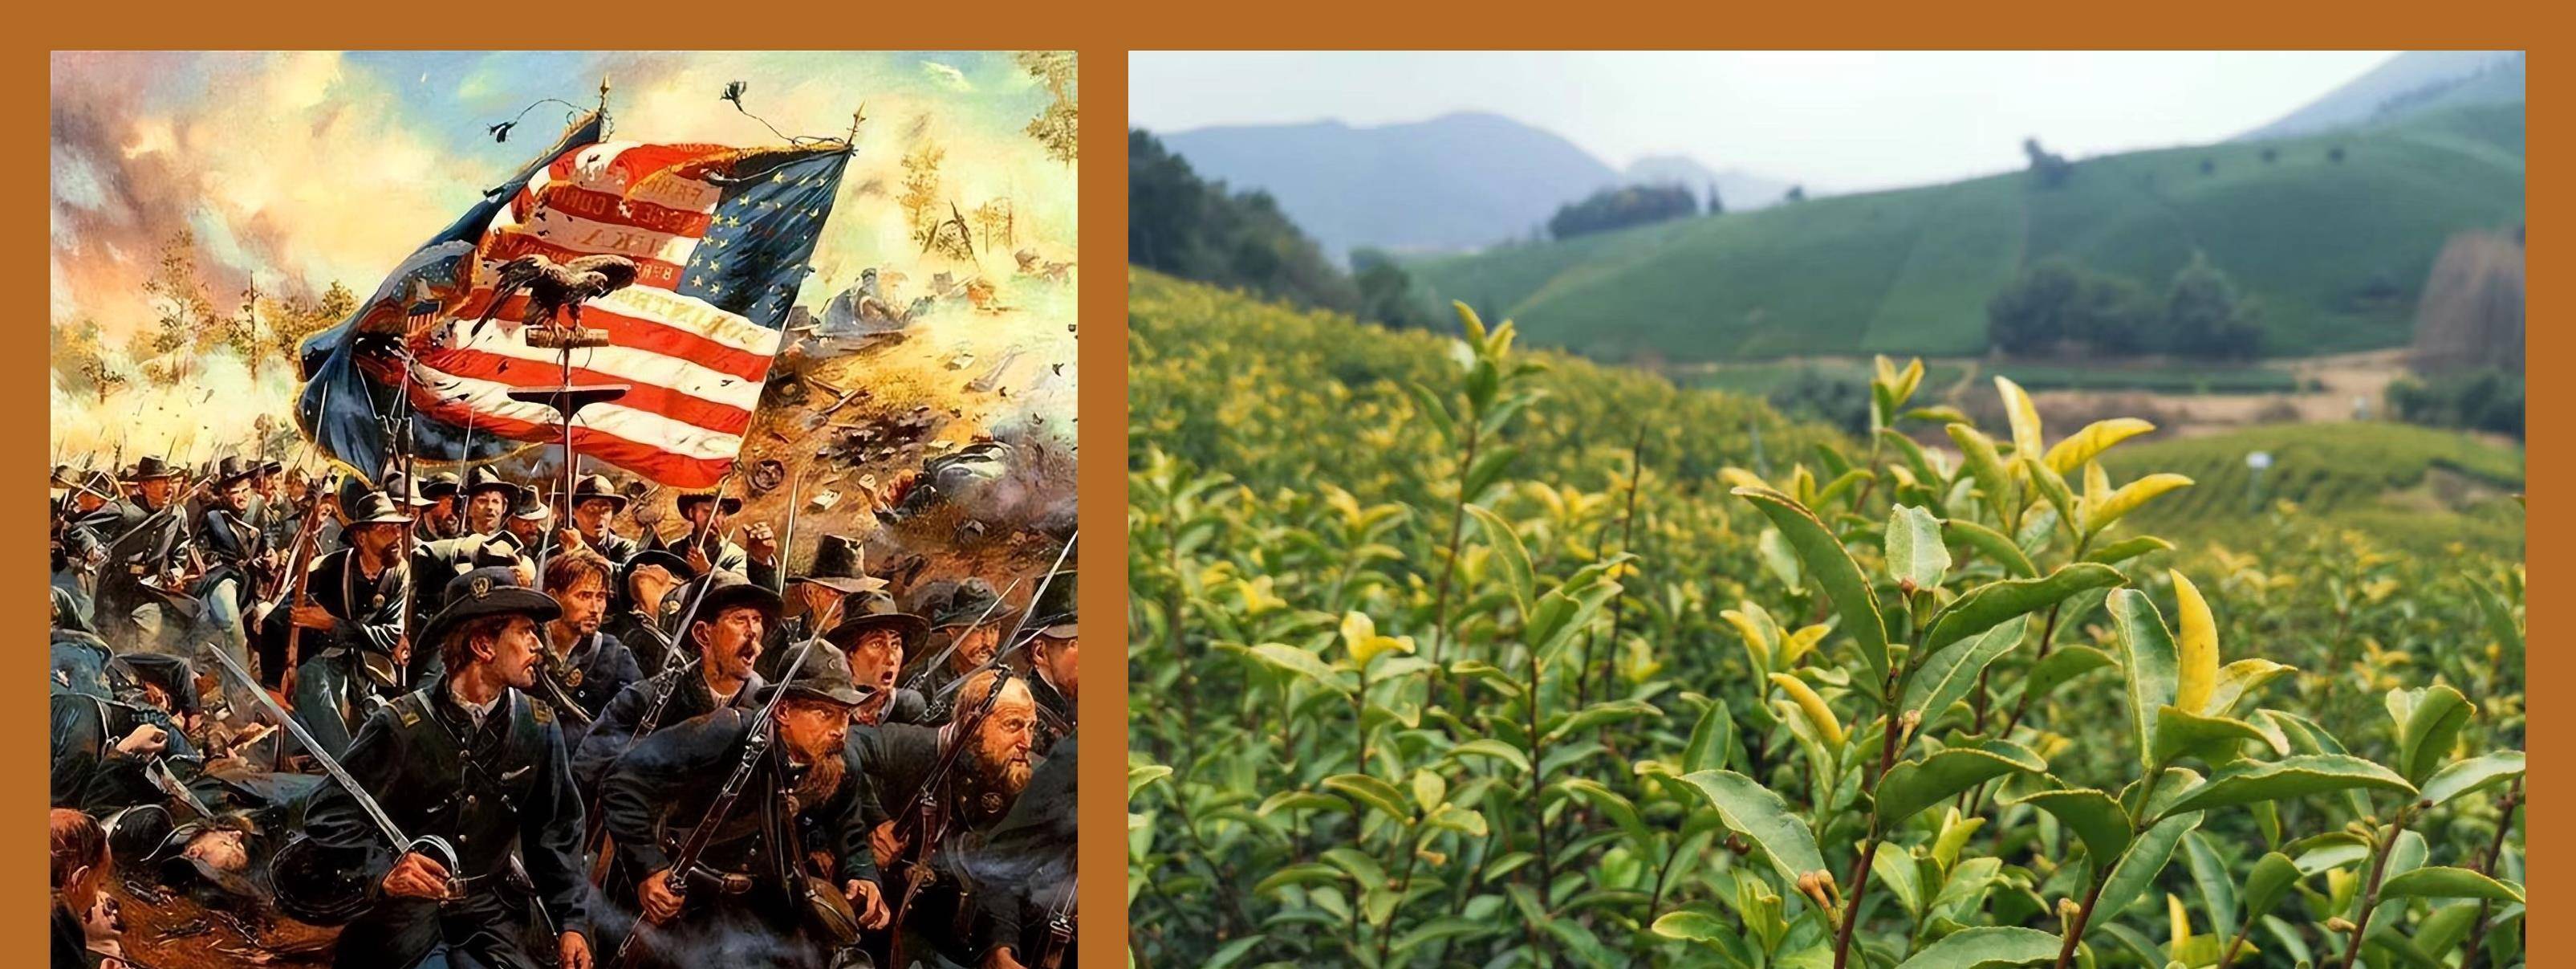 中国茶叶的力量：二百多年前撬动了美国的独